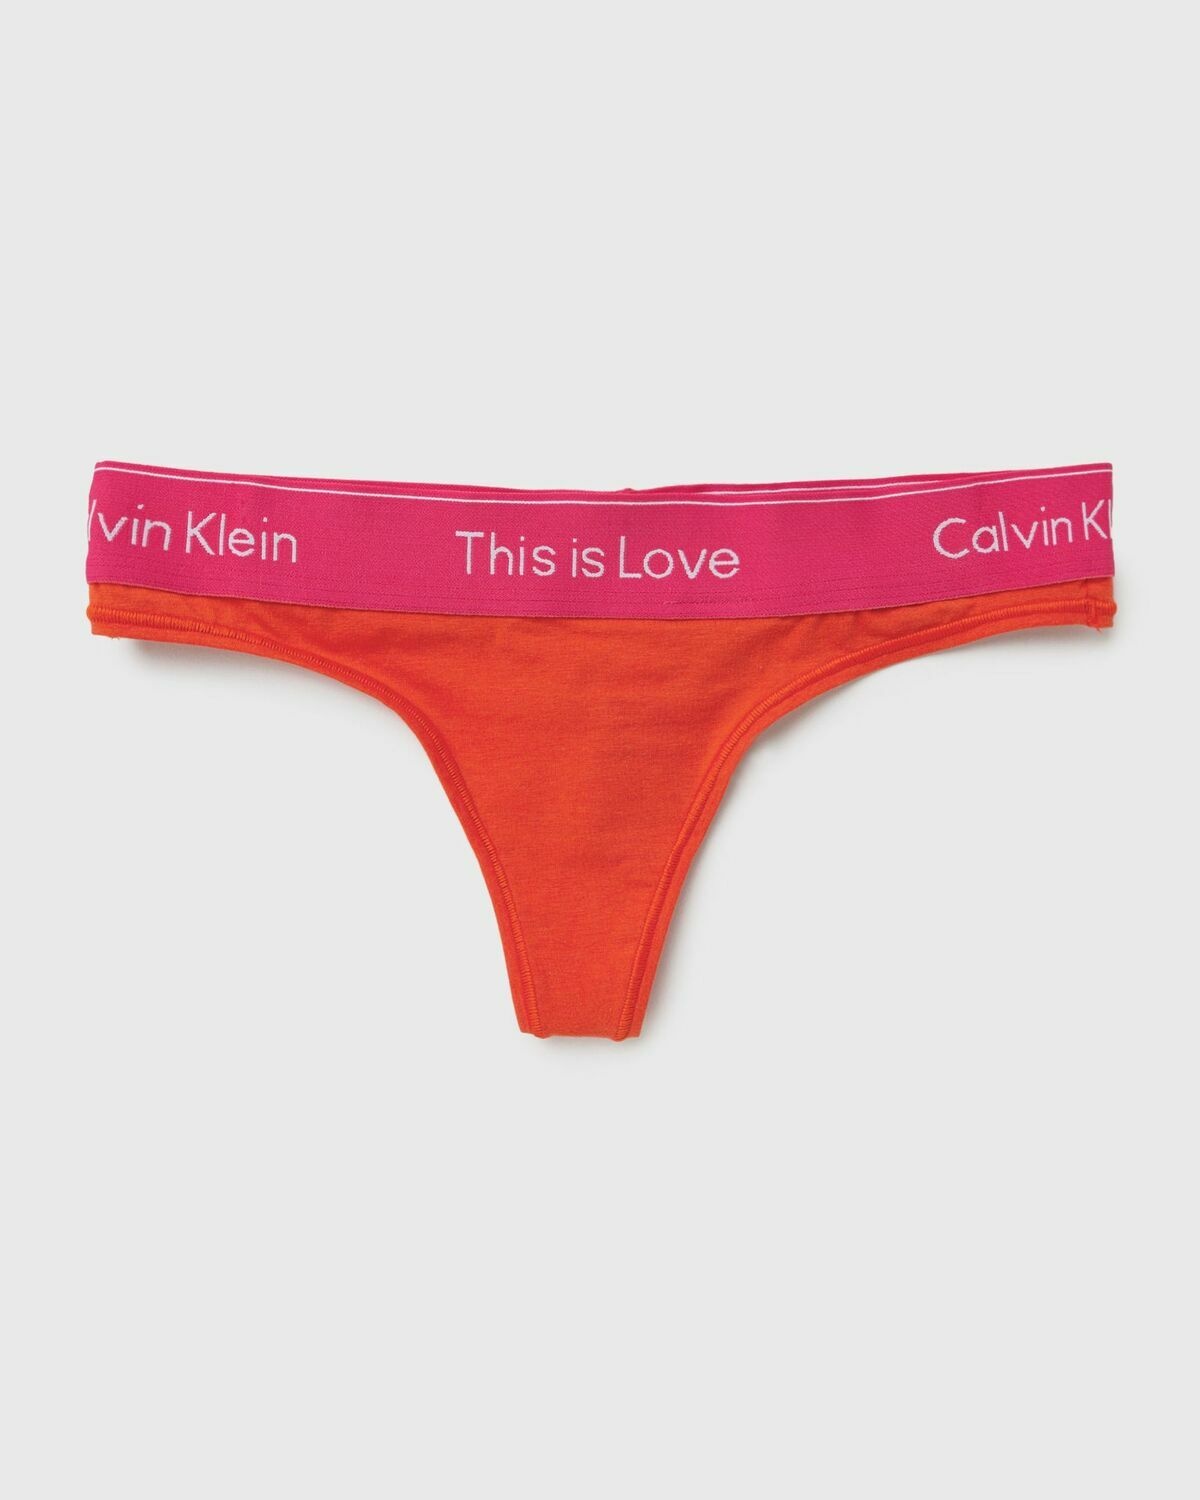 Calvin Klein Underwear Wmns Modern Thong Green - Womens - Panties